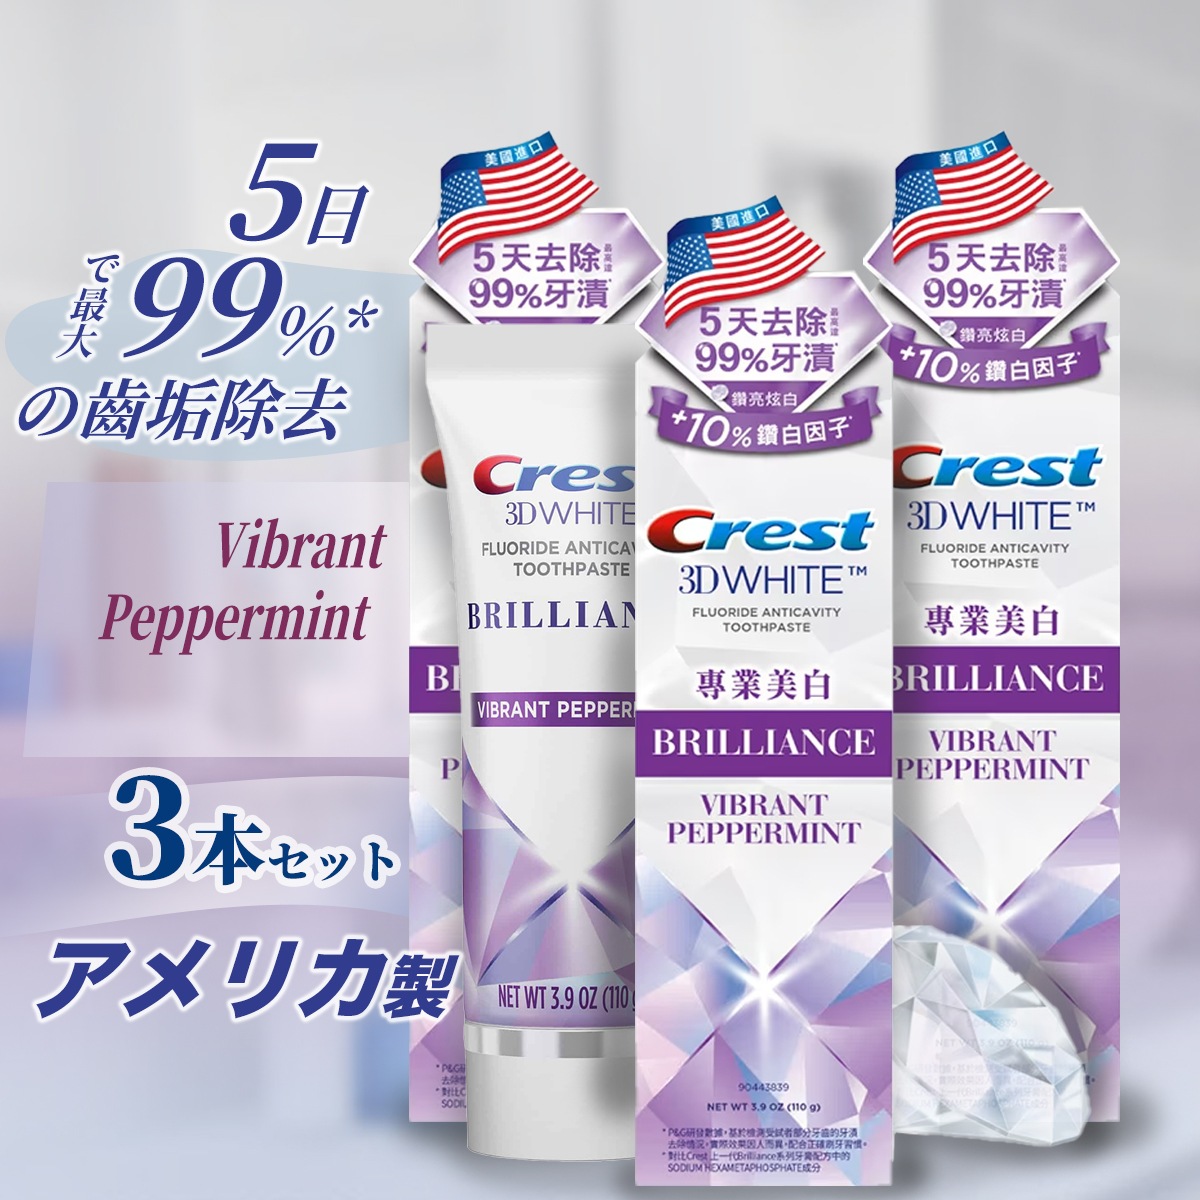 実物 米国正規品 最新Crest 3D White 歯磨き粉 99g 1本